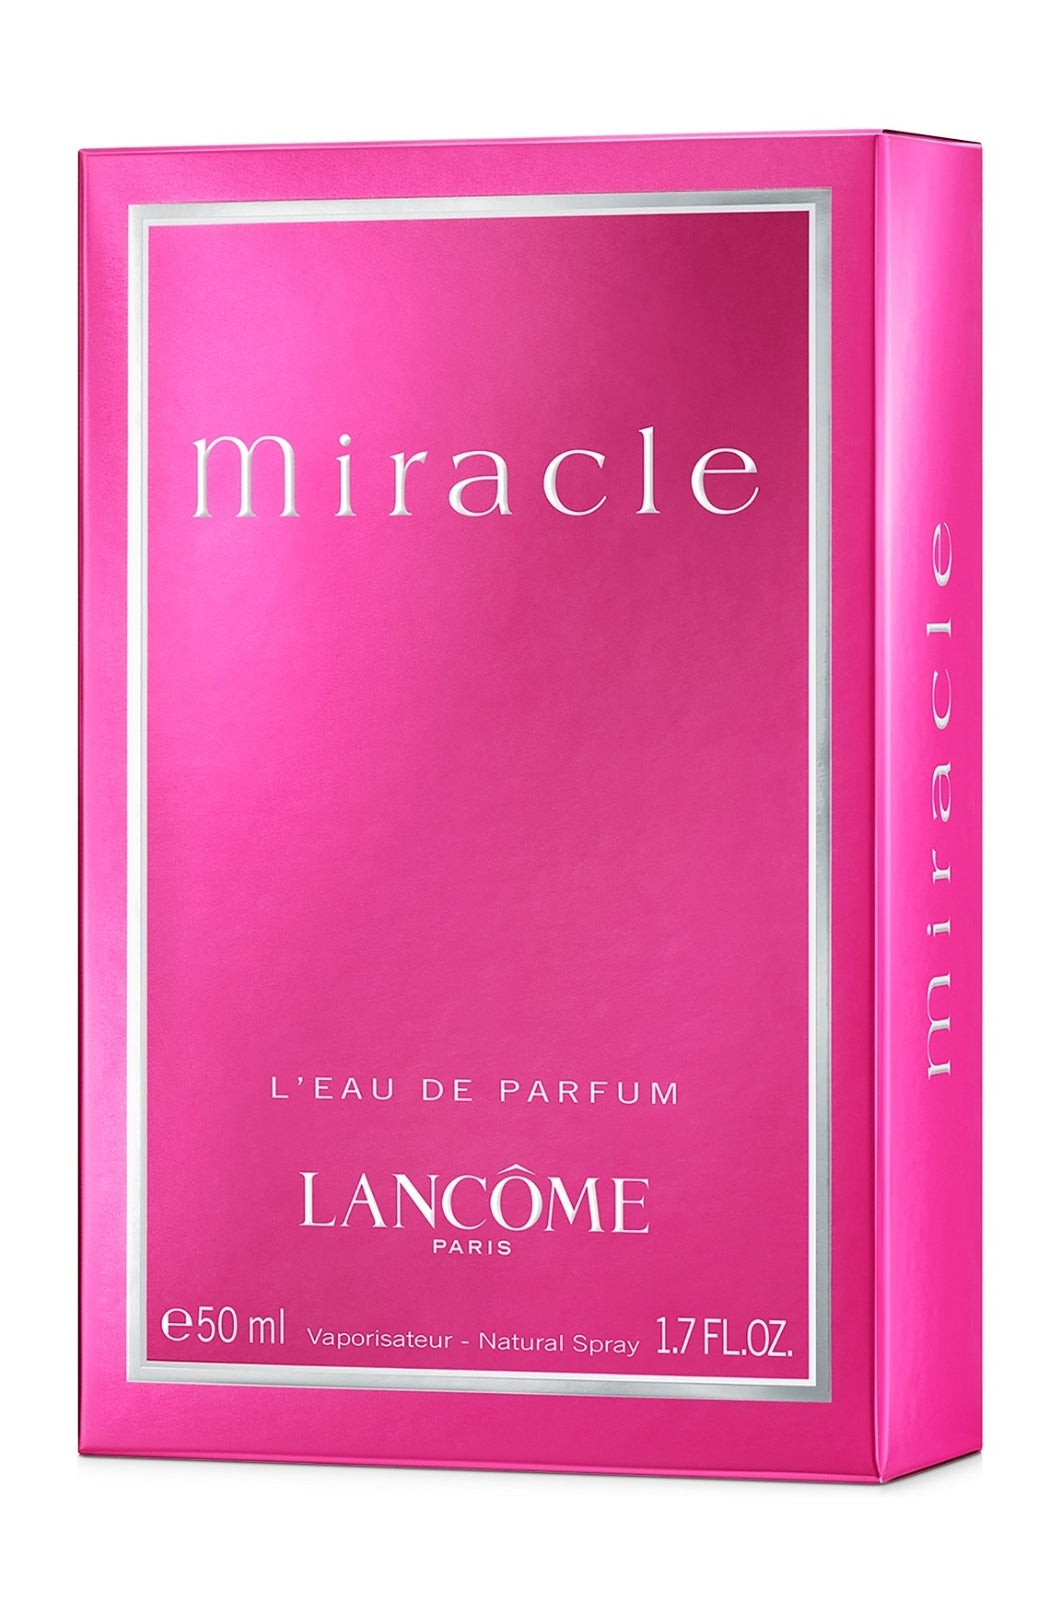 Lancôme Miracle Eau De Parfum Fragrance Collection